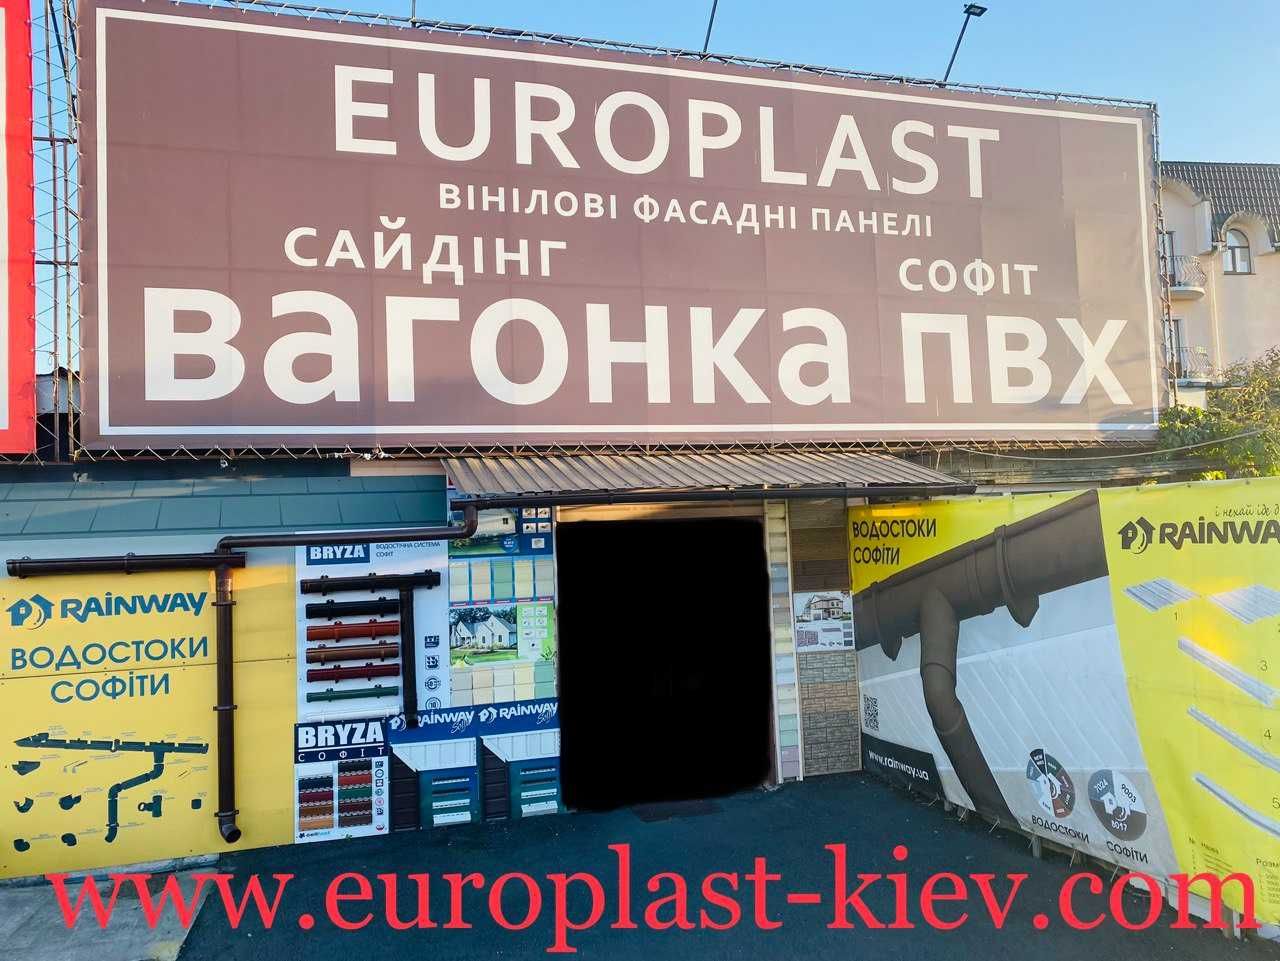 Europlast - Софіт, Вагонка пластикова, Сайдинг, Водосток, Акція !